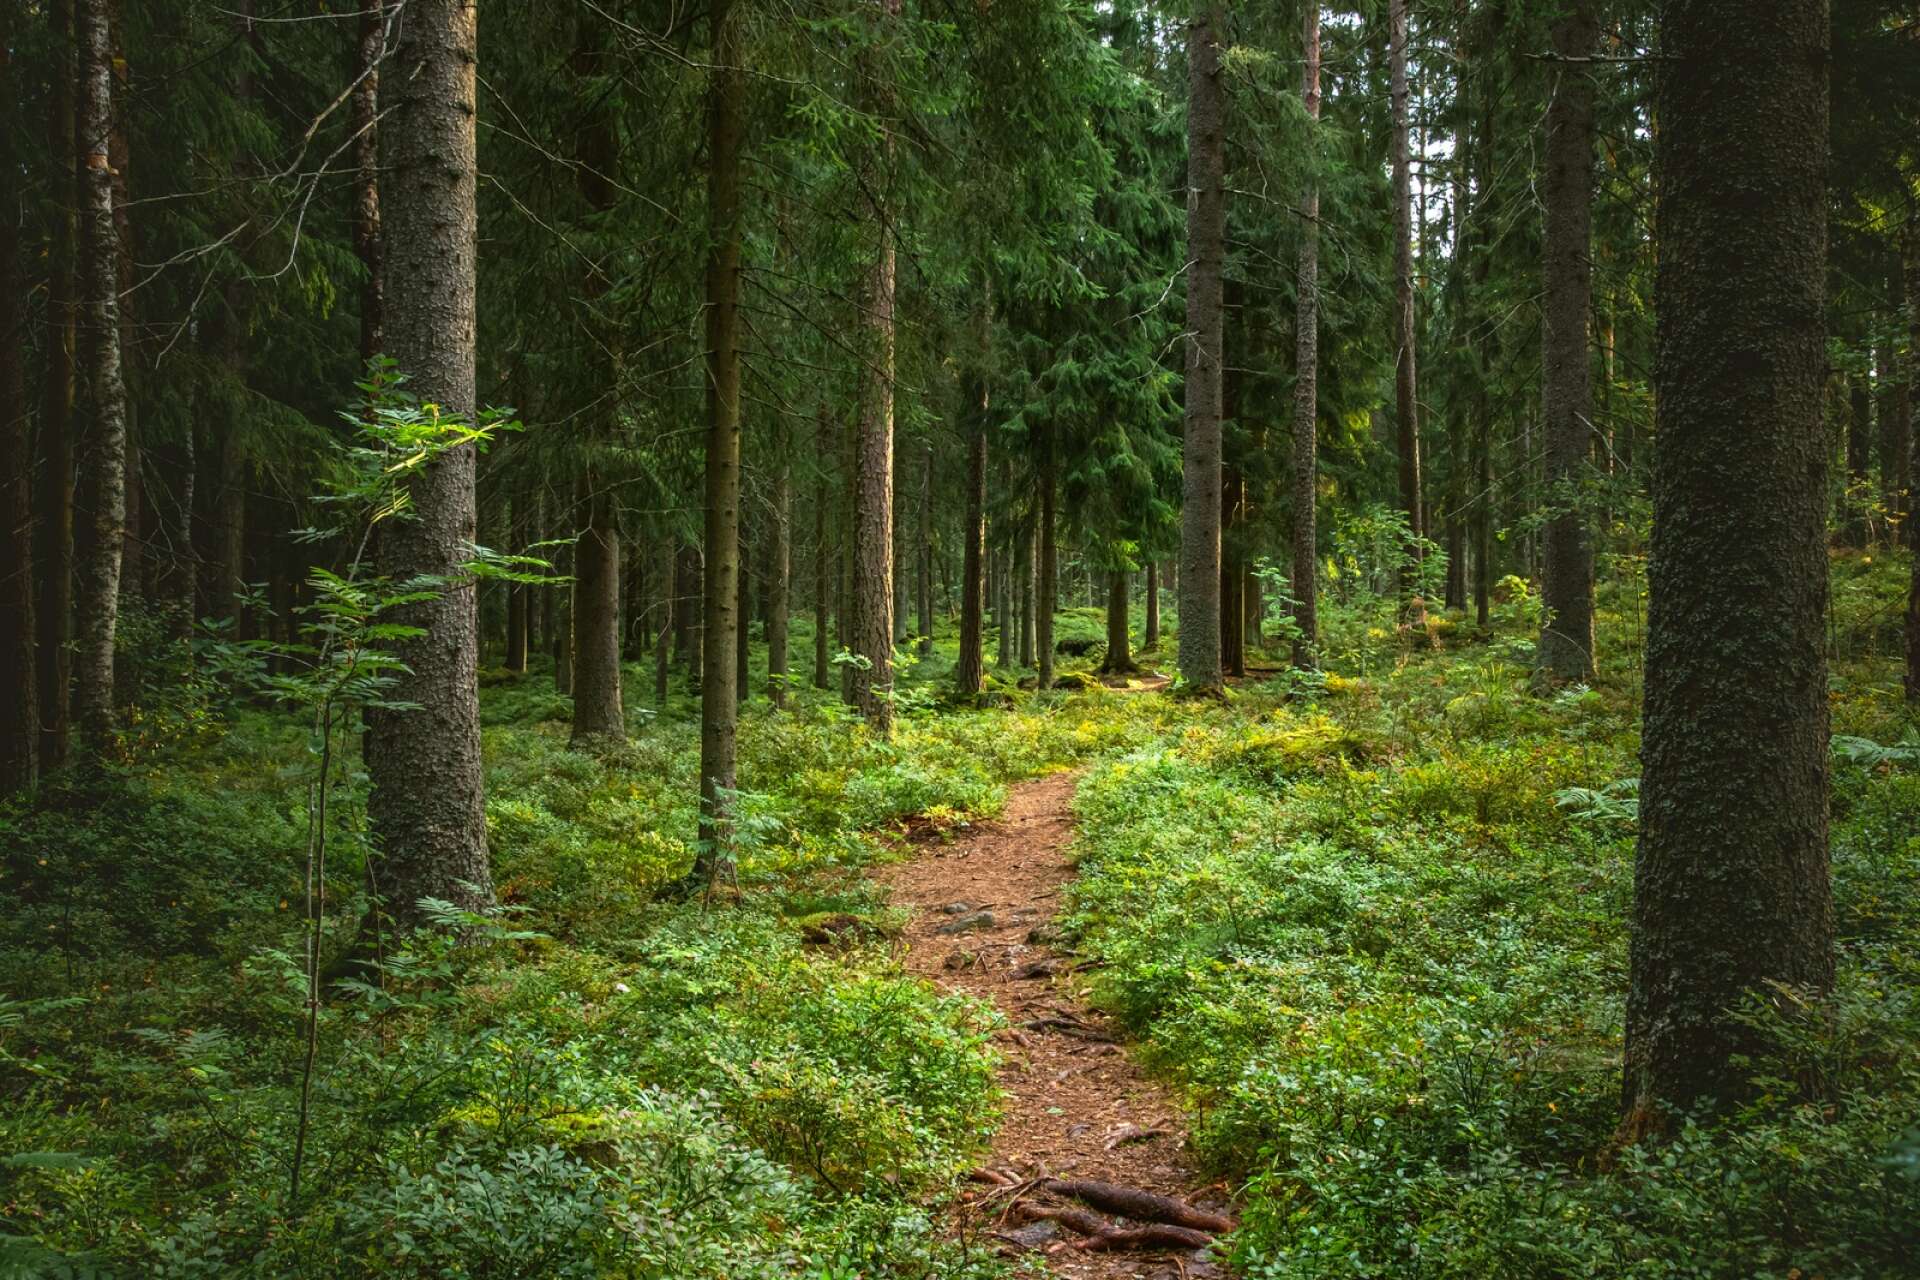 Skogsbruket i Västra Götaland spelar en viktig roll i den gröna omställningen, menar insändarskribenten.